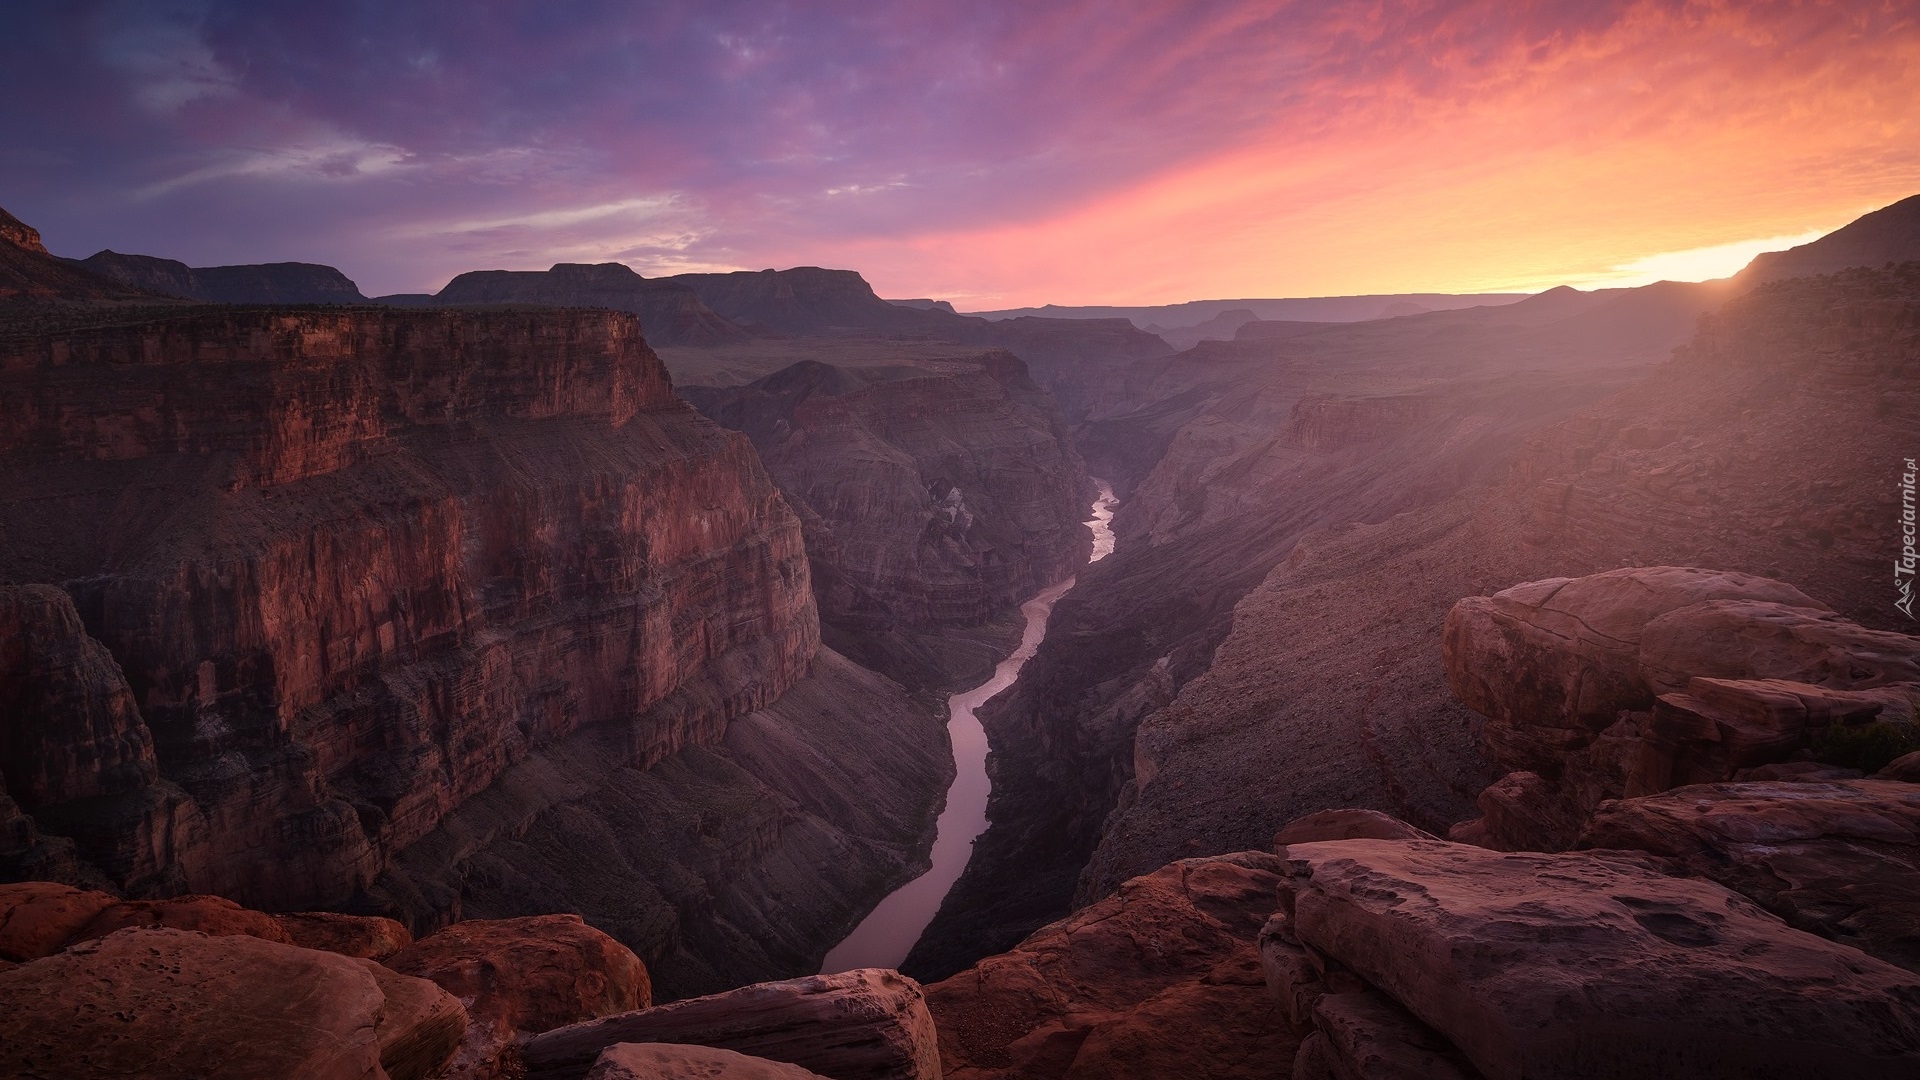 Park Narodowy Wielkiego Kanionu, Wielki Kanion Kolorado, Grand Canyon, Rzeka Kolorado, Zachód słońca, Stany Zjednoczone